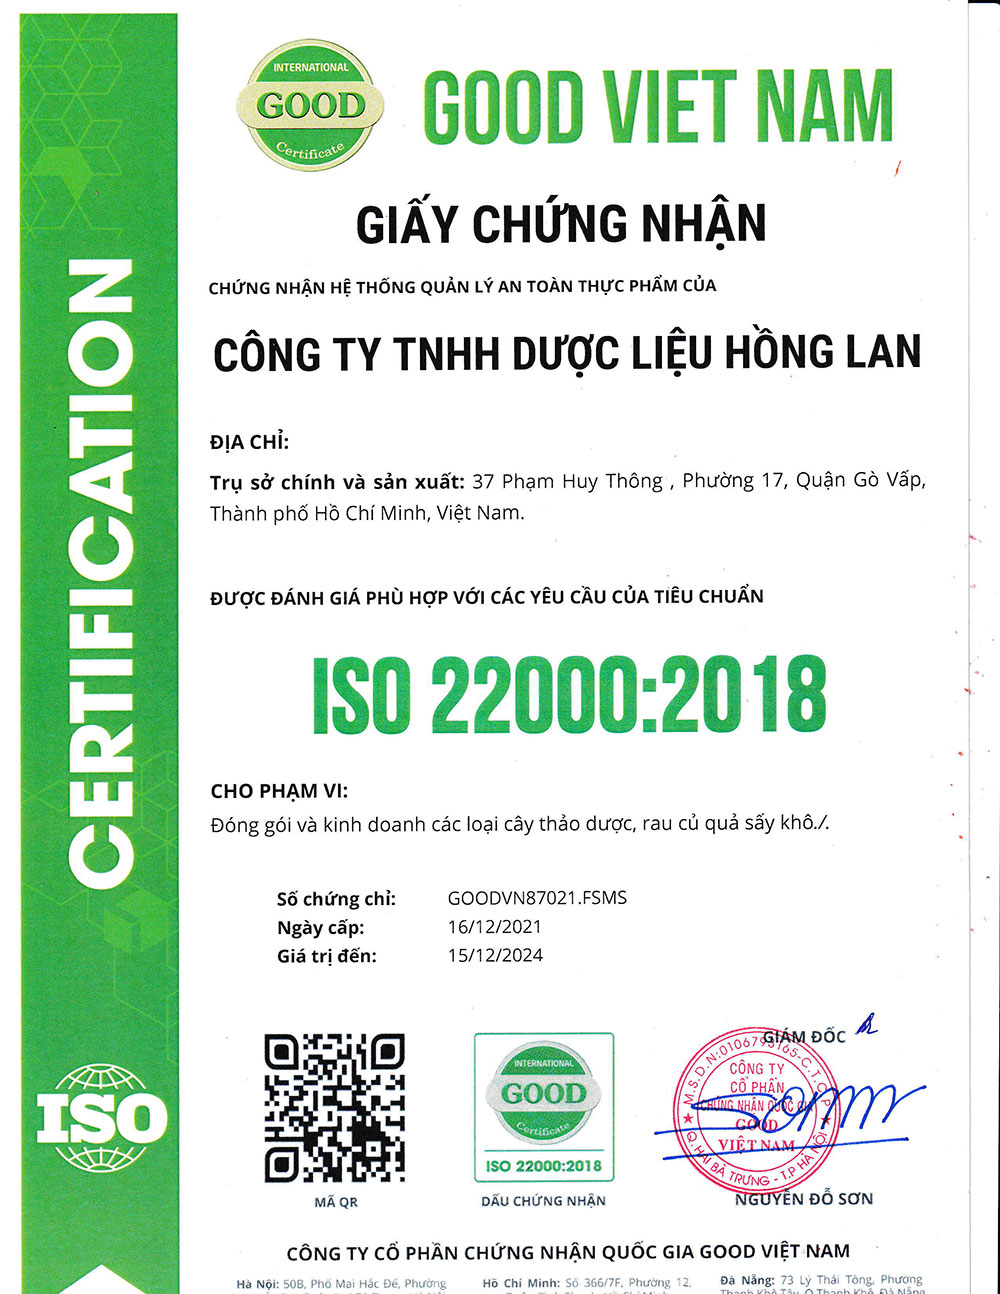 Trà Trinh Nữ Hoàng Cung & Nụ Tam Thất dạng túi lọc được sản xuất theo hệ thống quản lý an toàn thực phẩm ISO 22000:2018 được cấp bởi công ty cổ phần chứng nhận Quốc Gia Good Việt Nam (Good Viet Nam Certification Joint Stock Company)